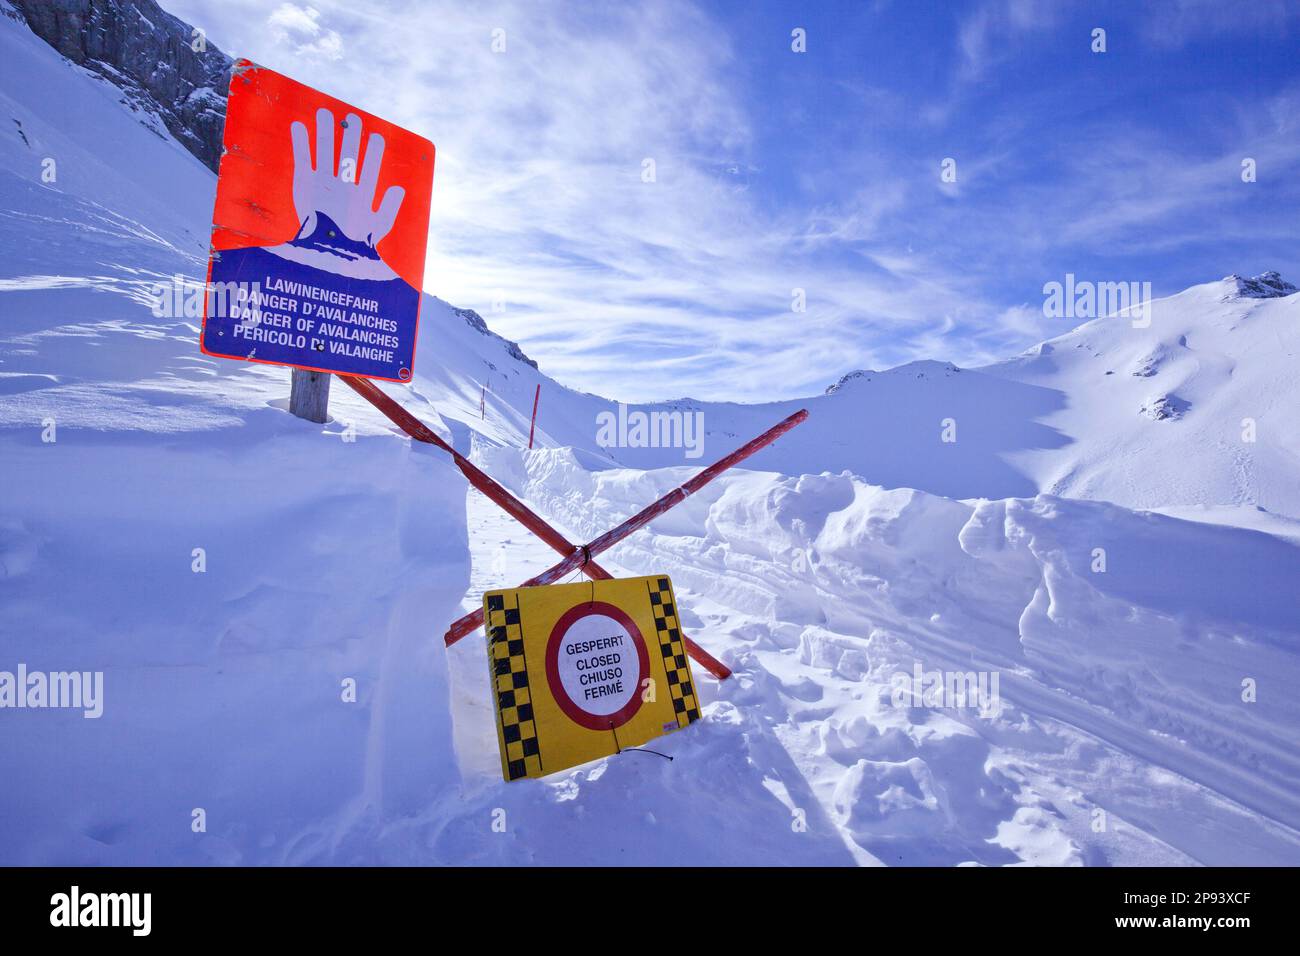 Chiuso per pericolo di valanghe sul sentiero circolare Passamani, inverno sui monti Karwendel Foto Stock